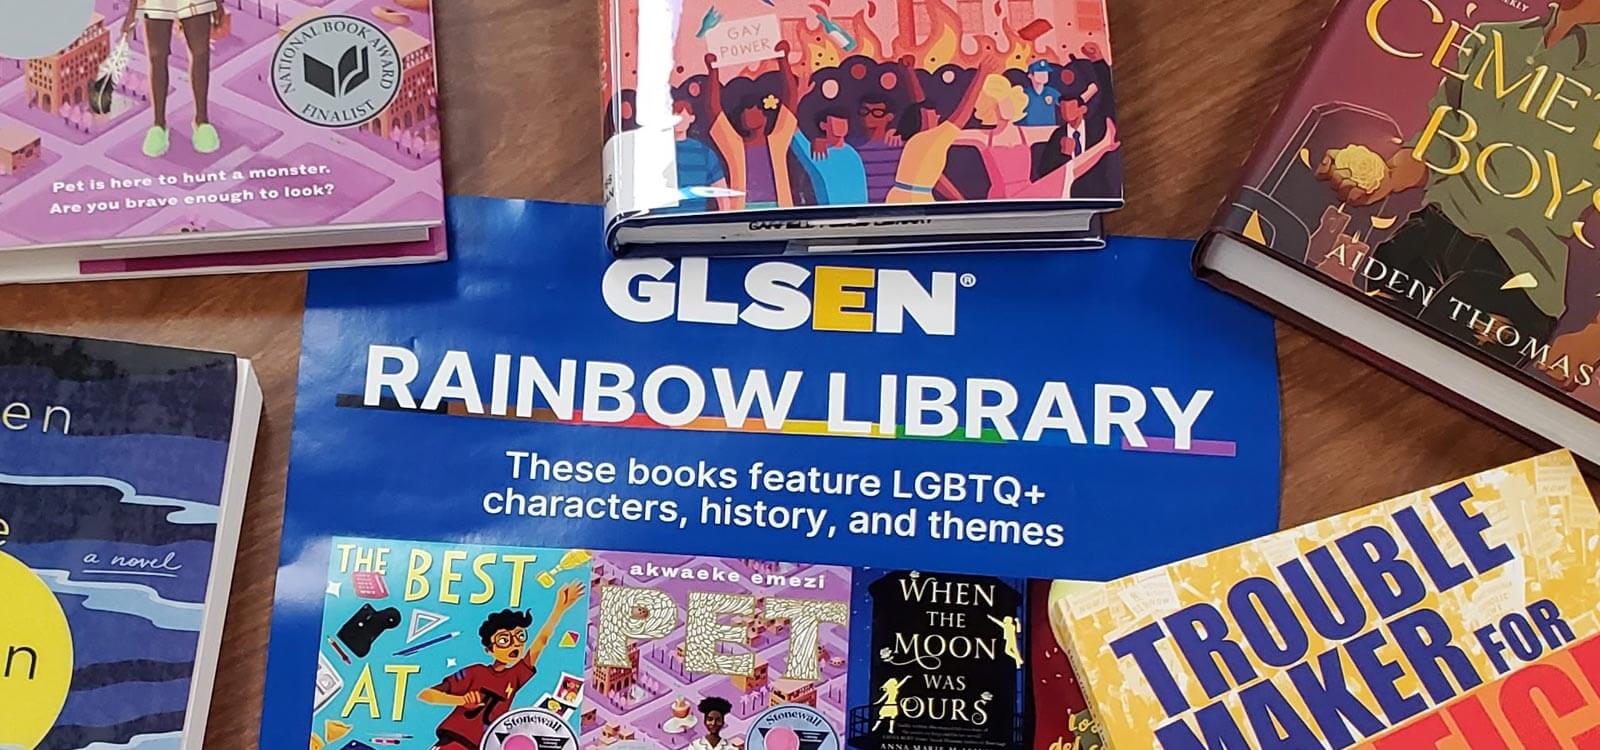 GLSEN Rainbow Library